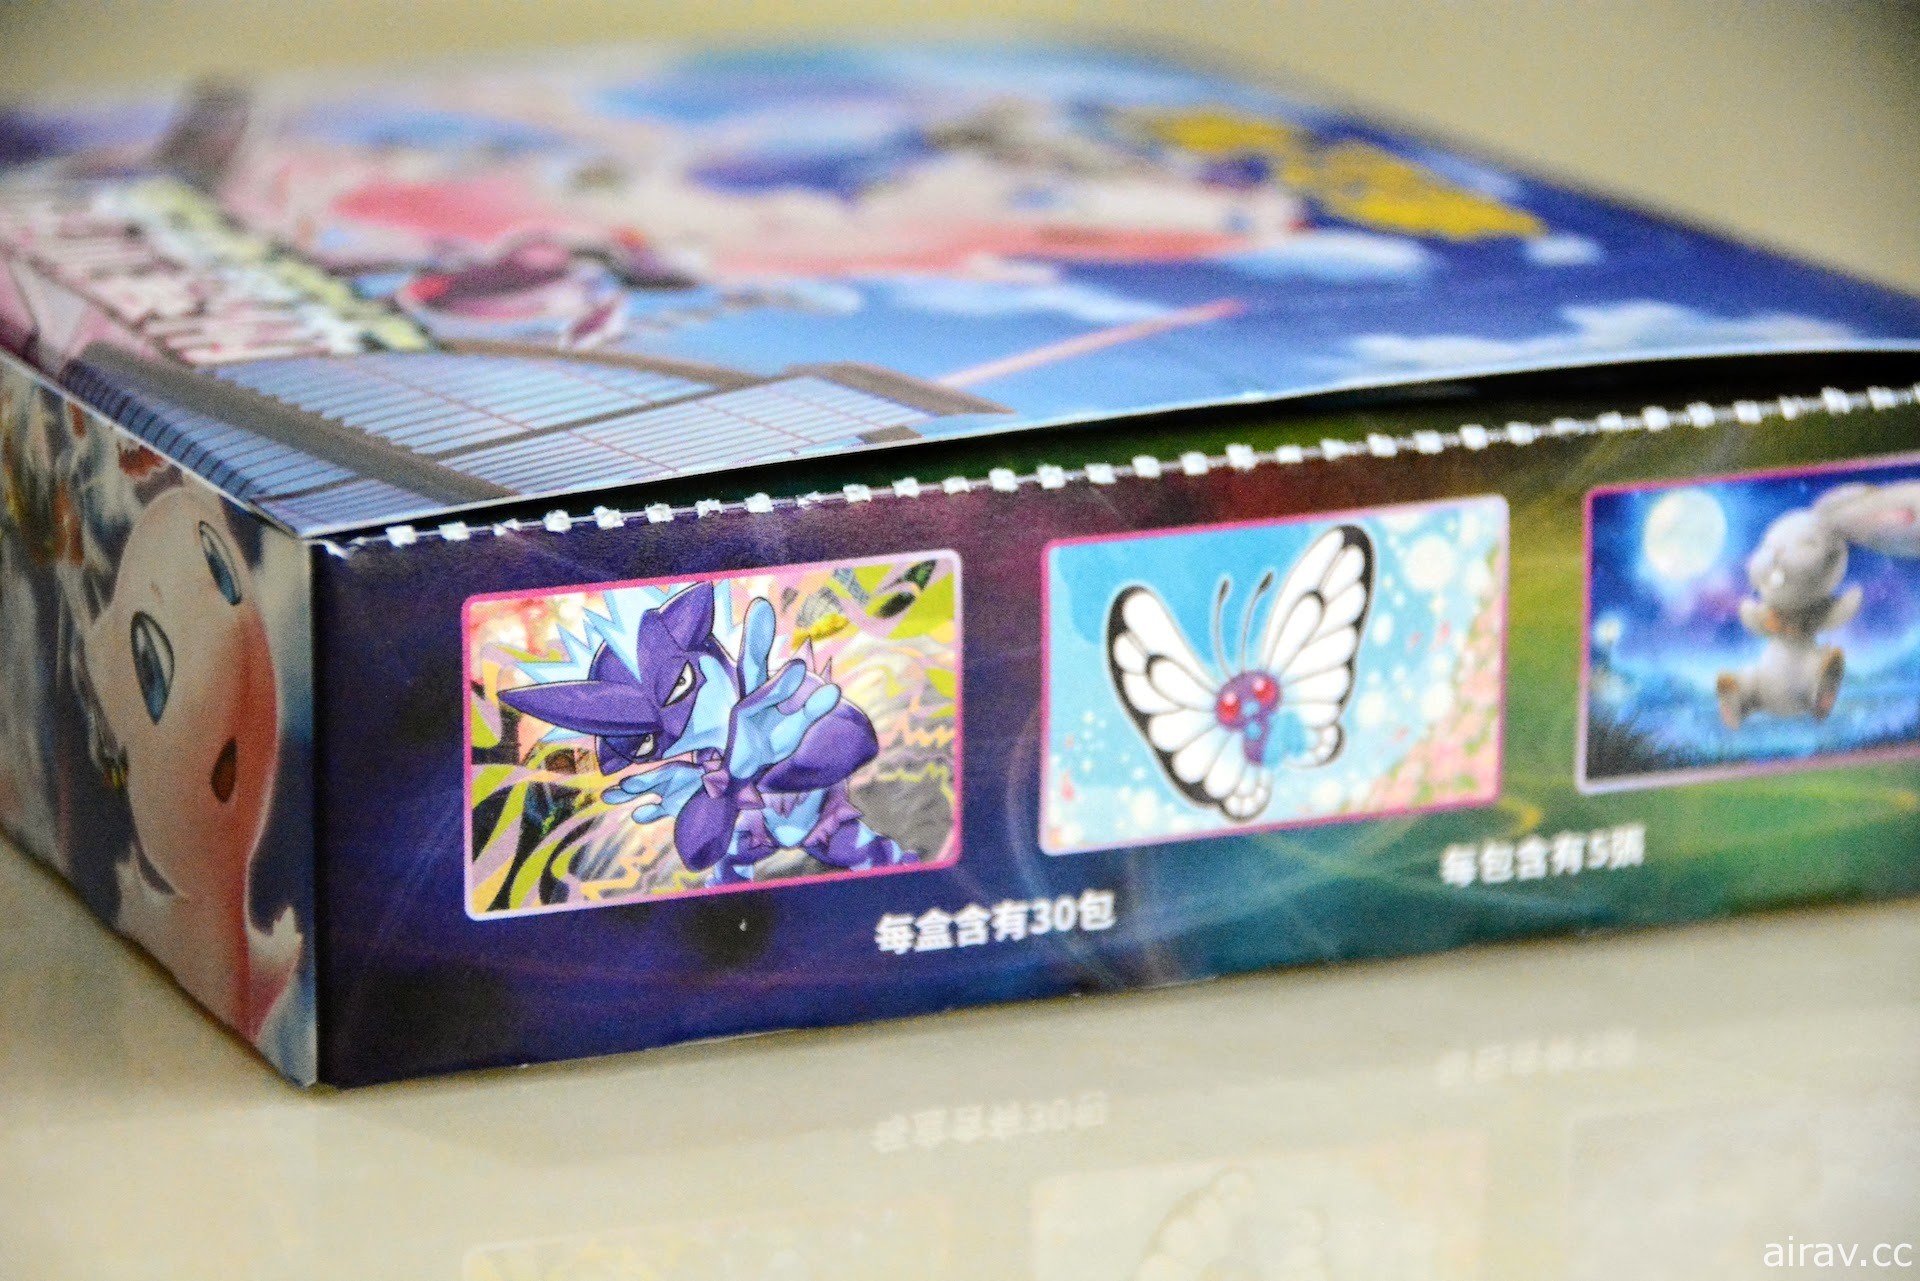 【開箱】《寶可夢集換式卡牌遊戲》「匯流藝術」發售 新對戰風格「FUSION」登場